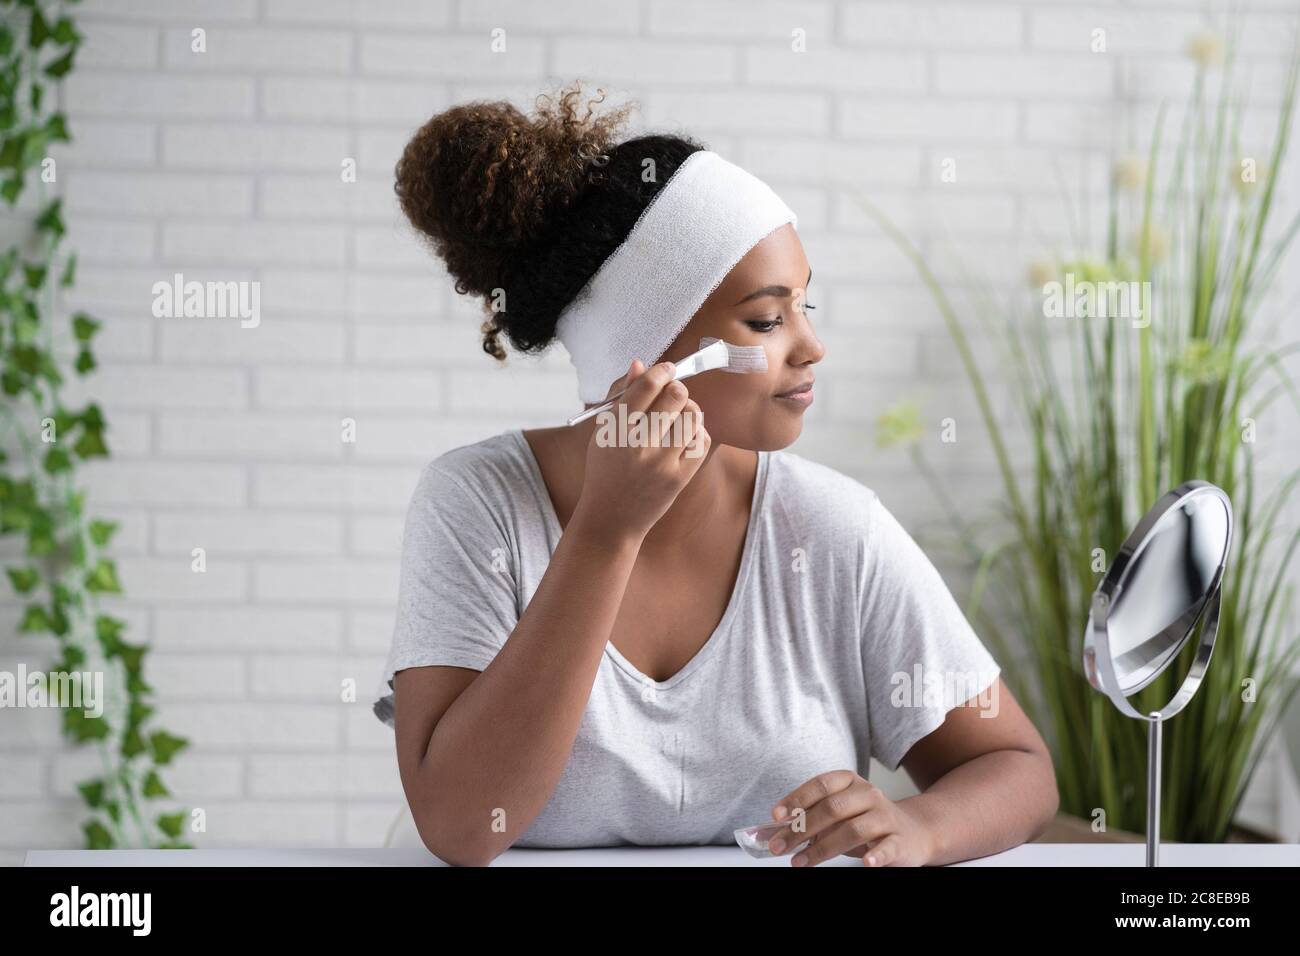 Jeune femme portant un serre-tête appliquant un masque facial tout en regardant à l'intérieur miroir à la maison Banque D'Images